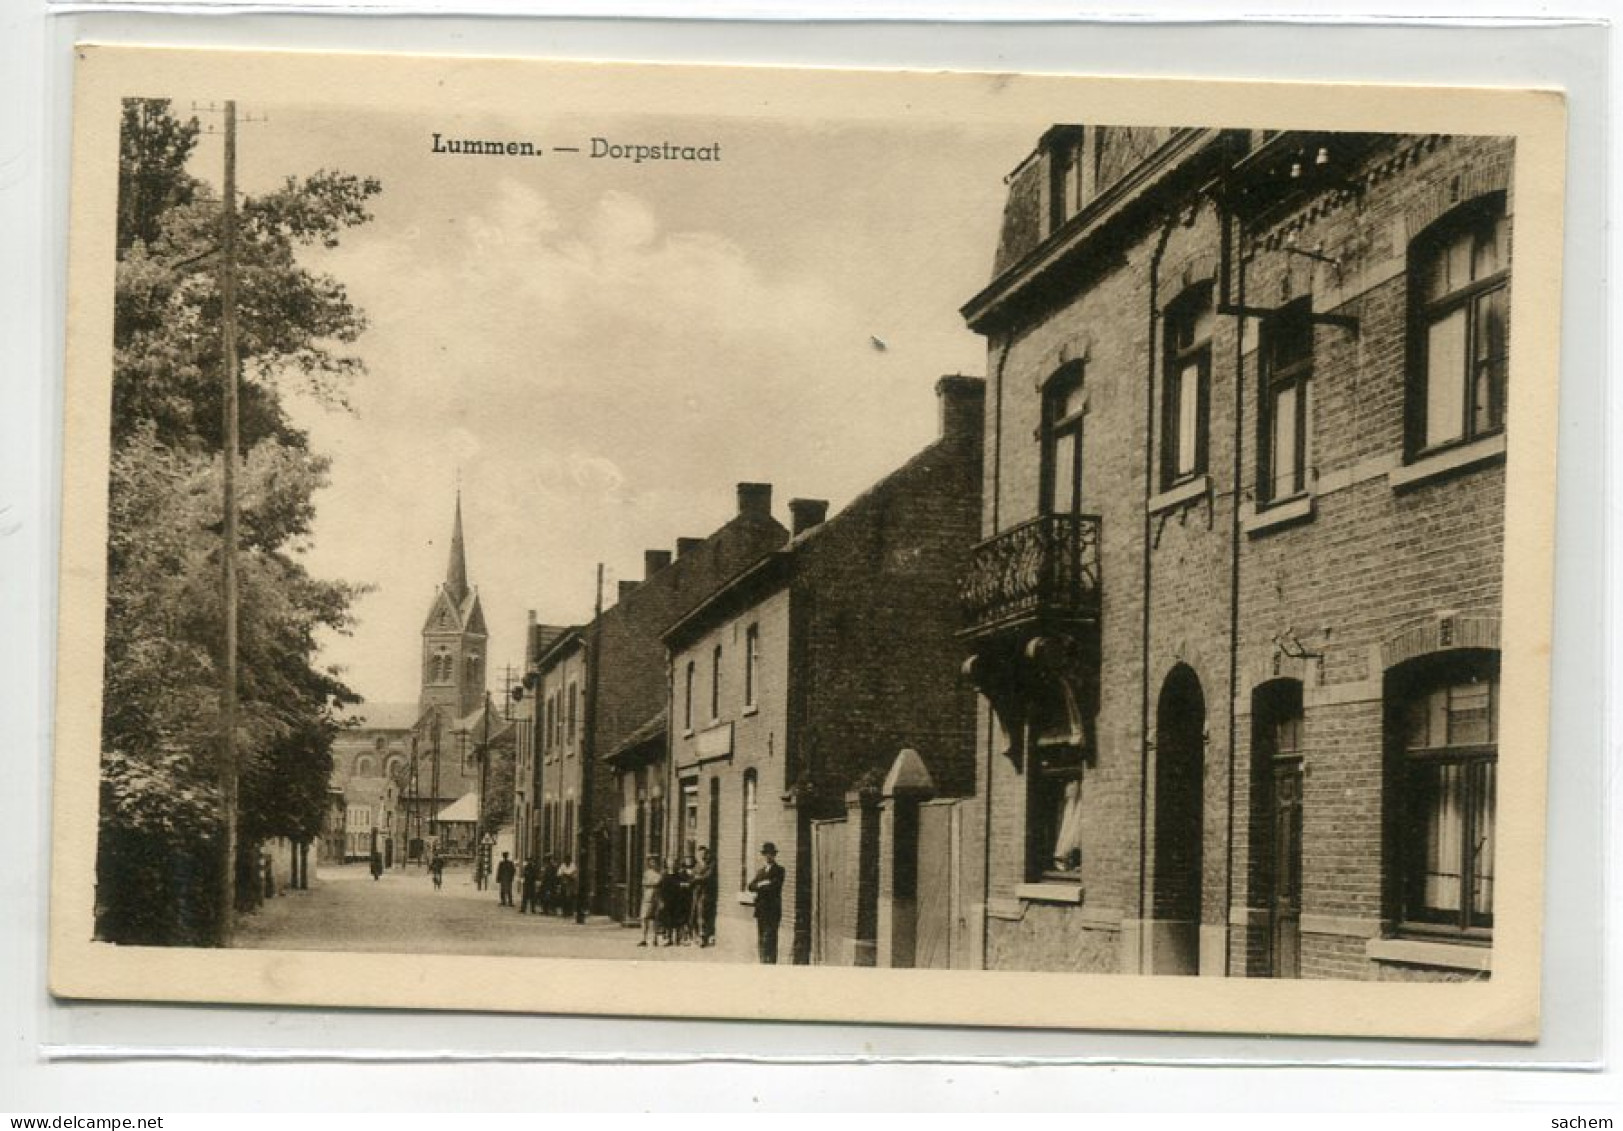 BELGIQUE LUMMEN Carte RARE Dorpstraat Rue Du Village  1930  Uitg G Steegmans Vanheel Lummen    /D01   2022 - Lummen